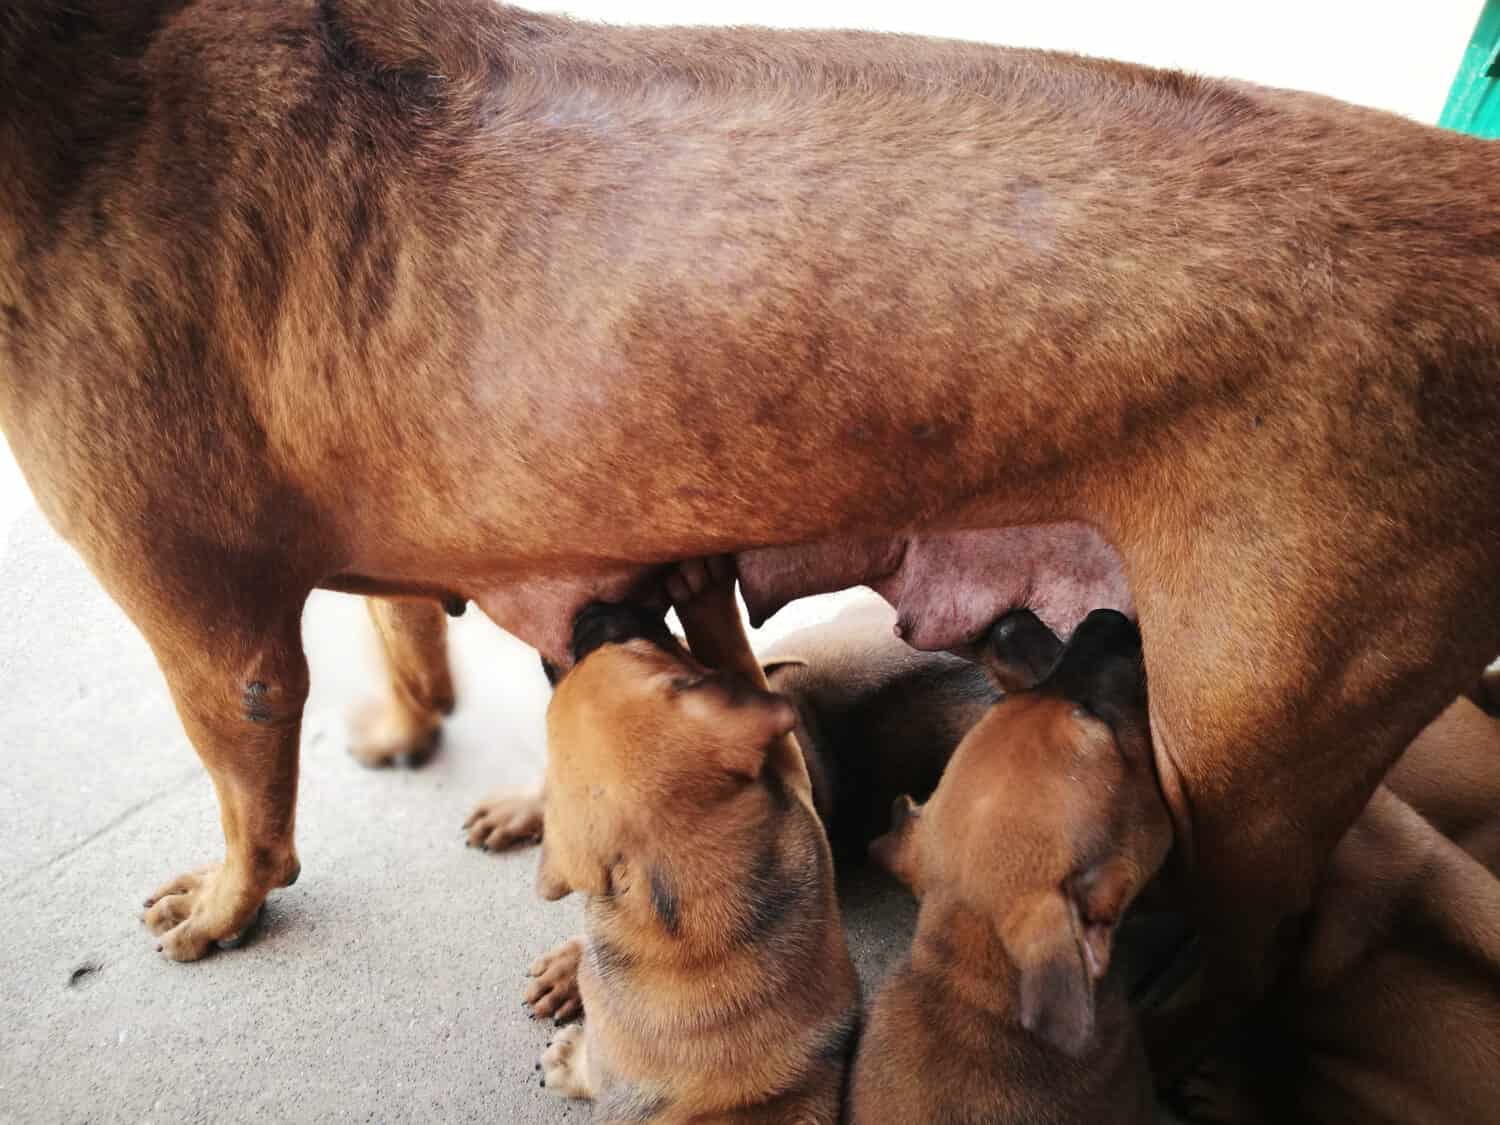 I cuccioli strapazzano i capezzoli della madre. È ora di mangiare, dare da mangiare al cane Thai Ridgeback, al cane che allatta.